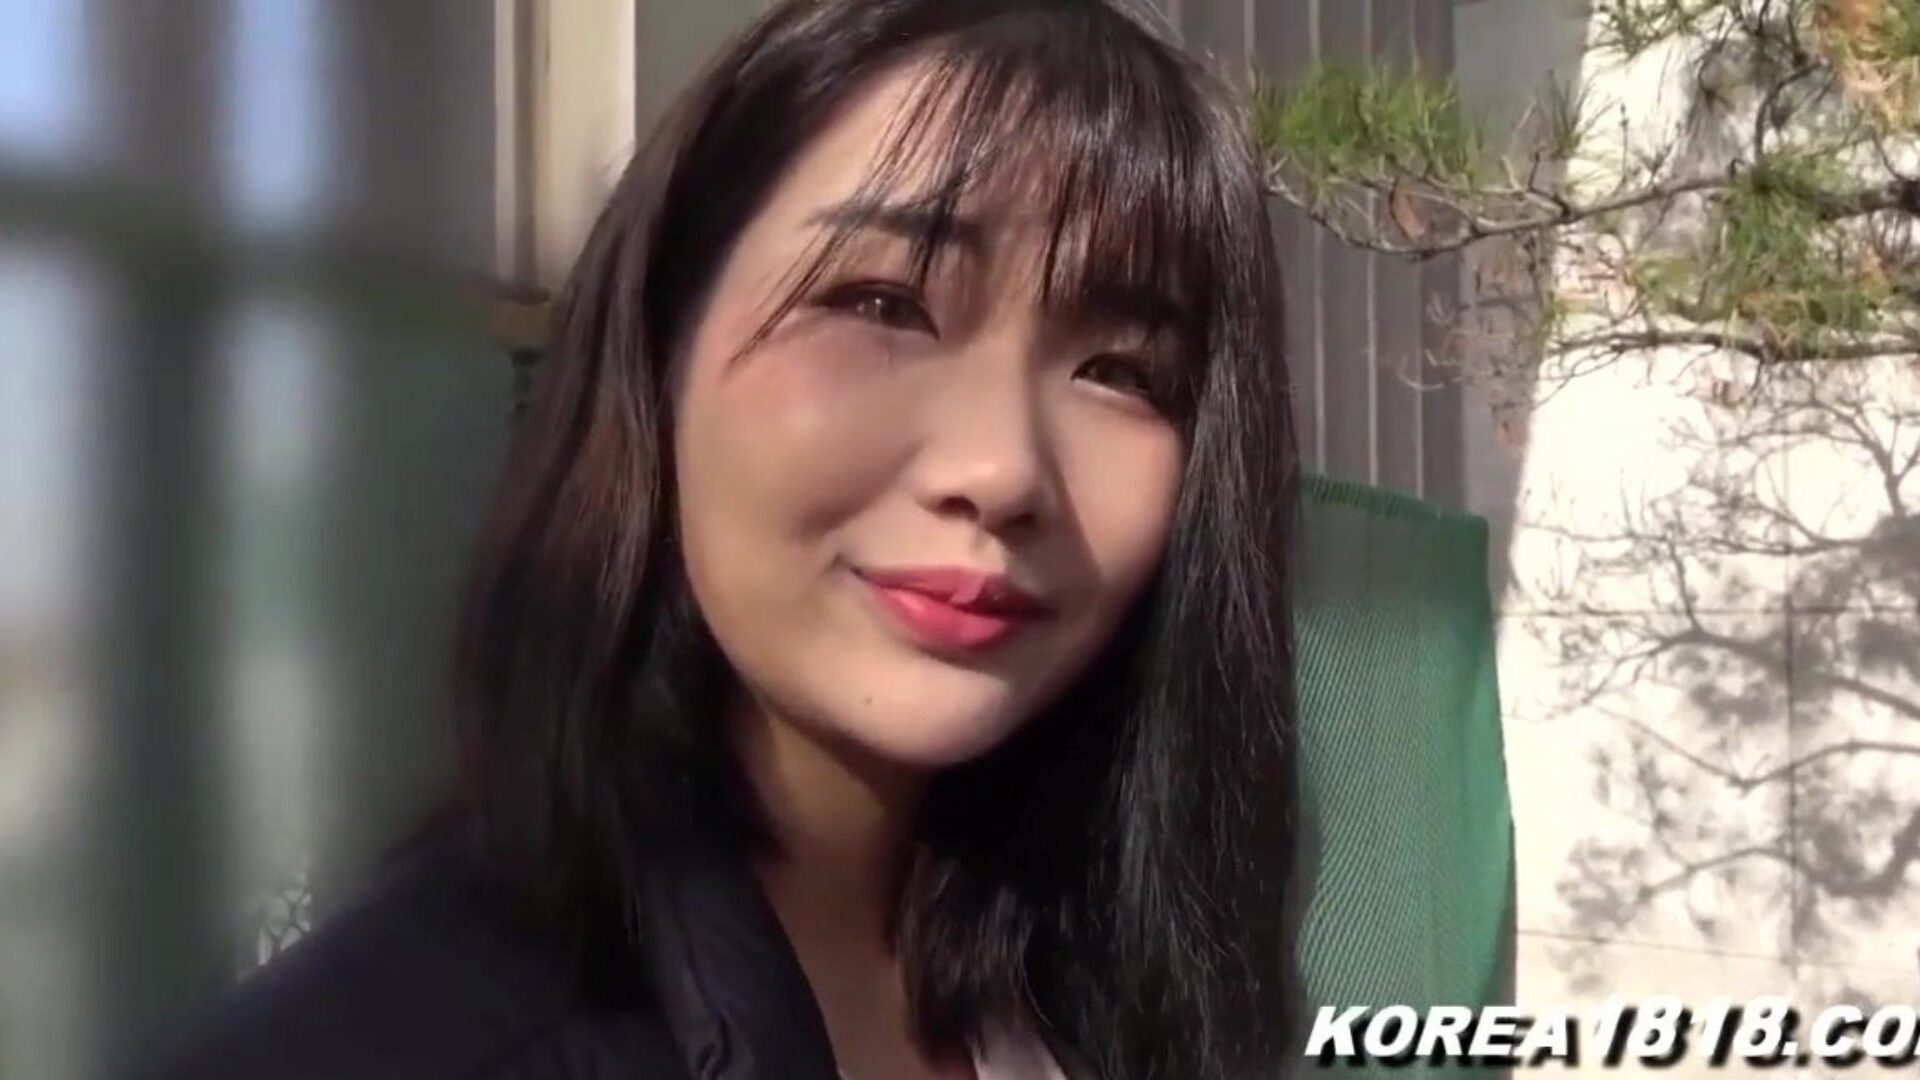 корејска порно супер врућа корејска курва се залупила